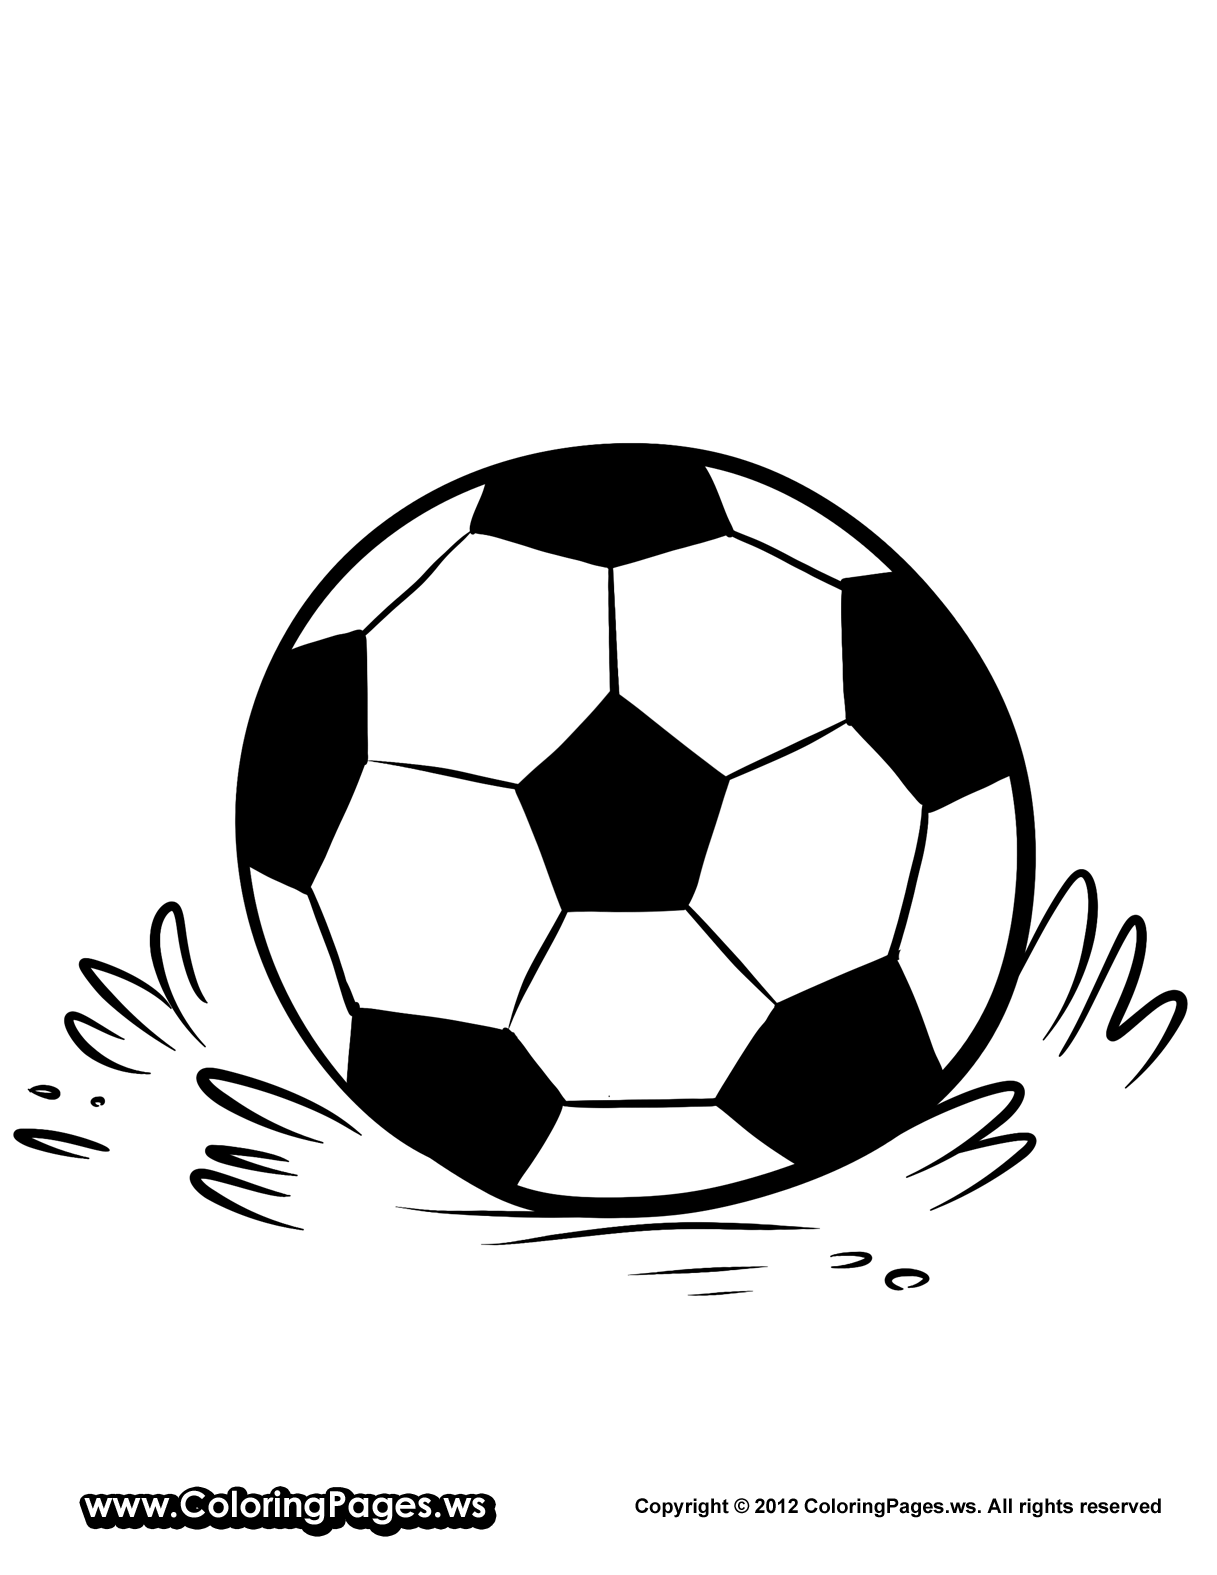 Image #17567 - Coloriage soccer gratuit